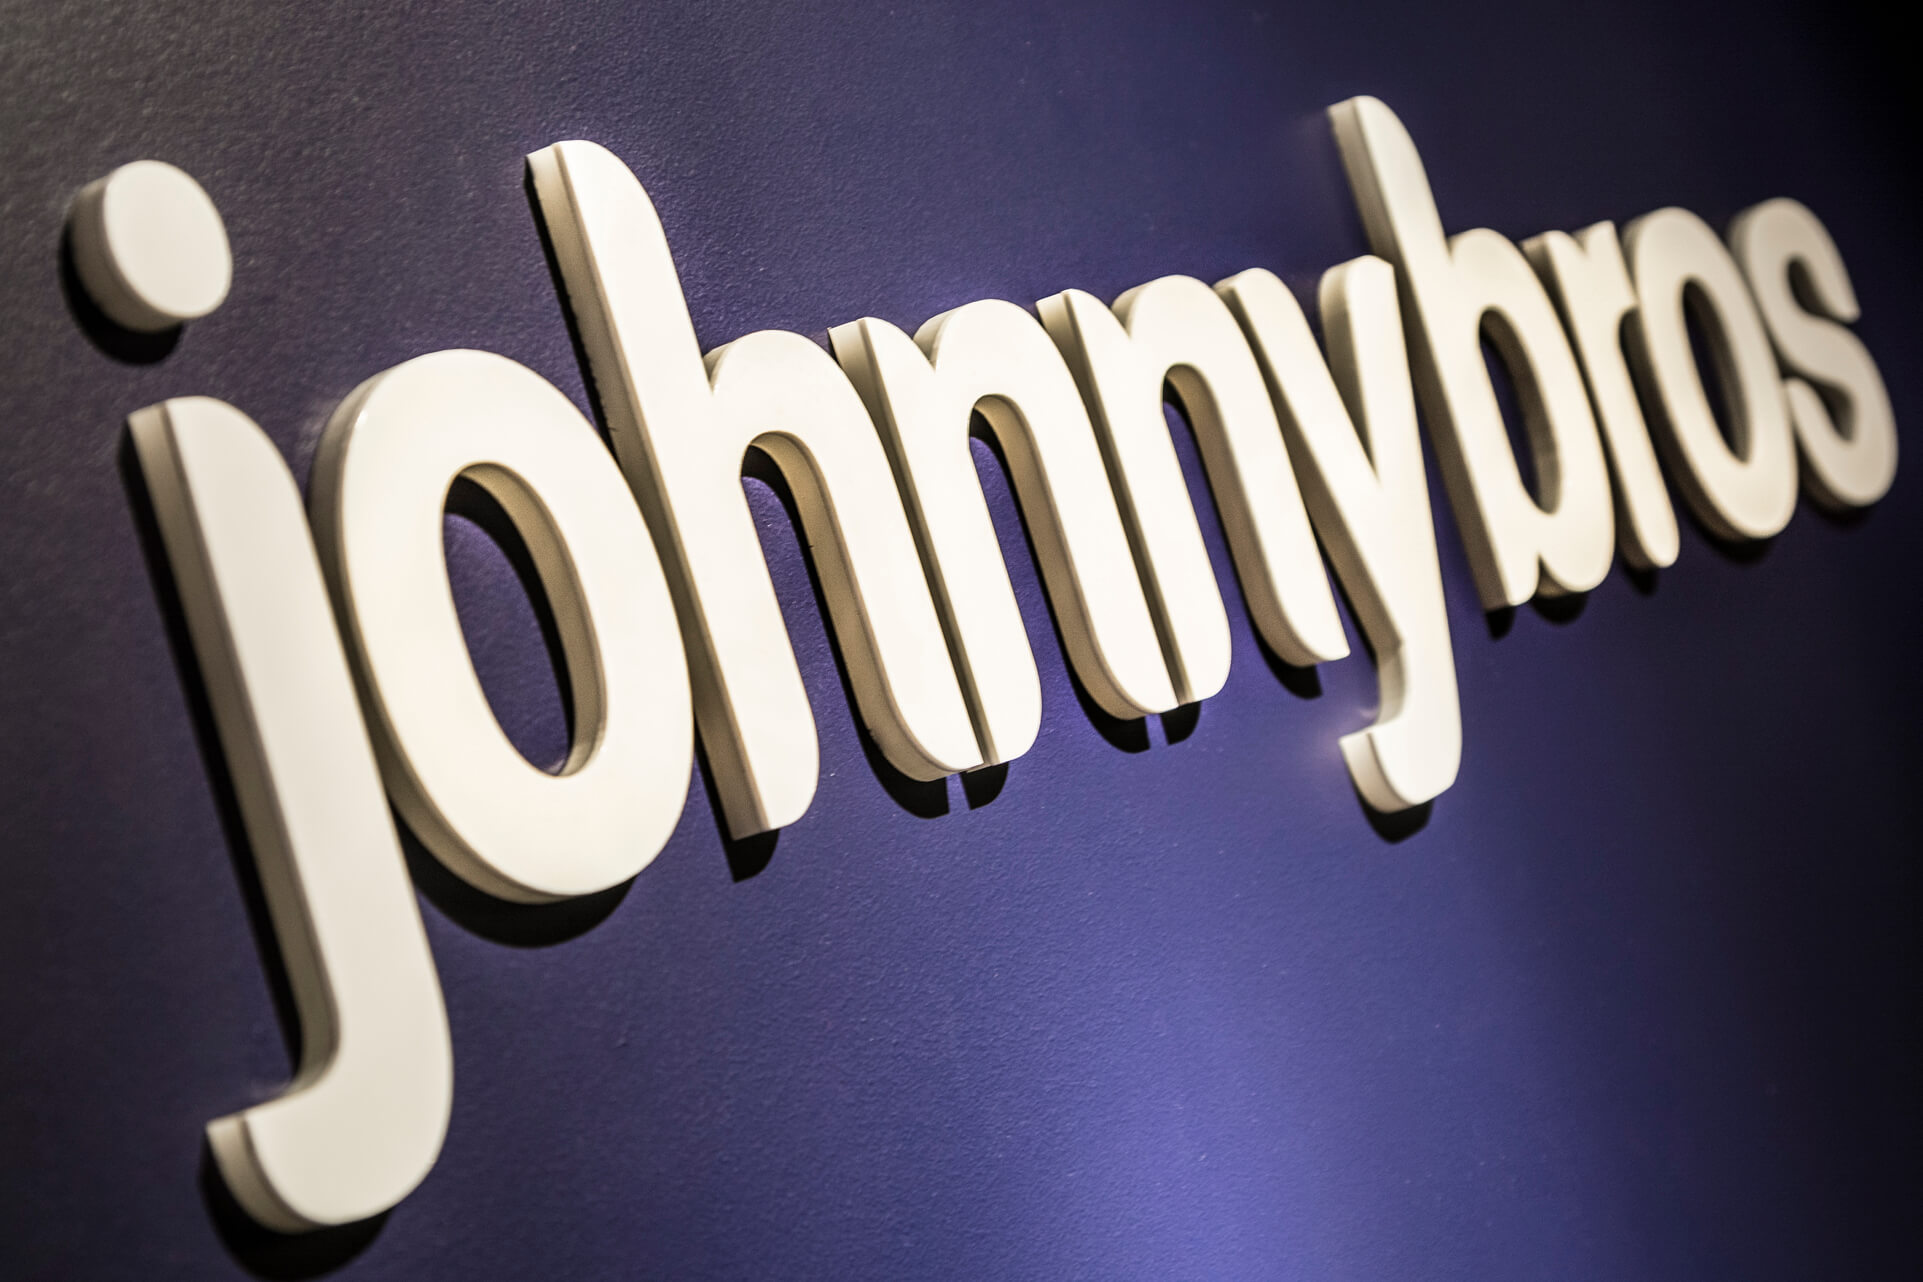 Johnnybros - Johnybros - litery przestrzenne 3D wykonane z plexiglasu wycinane laserowo